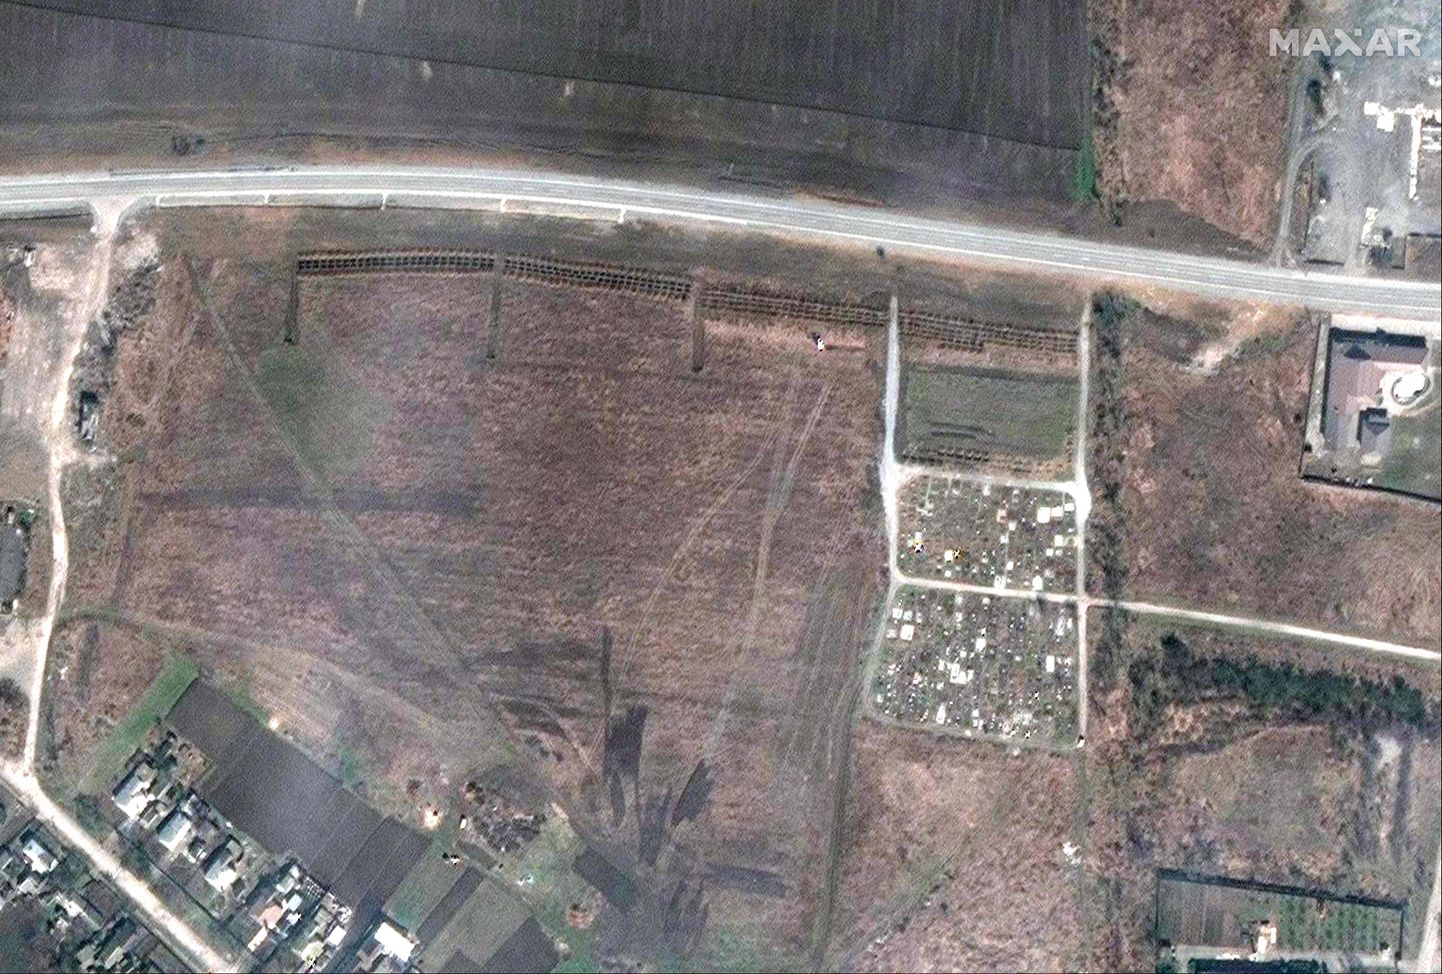 Maxari satelliidipilt Manhuši kalmistust, kus on tee äärde tekkinud uued suured kraavid.